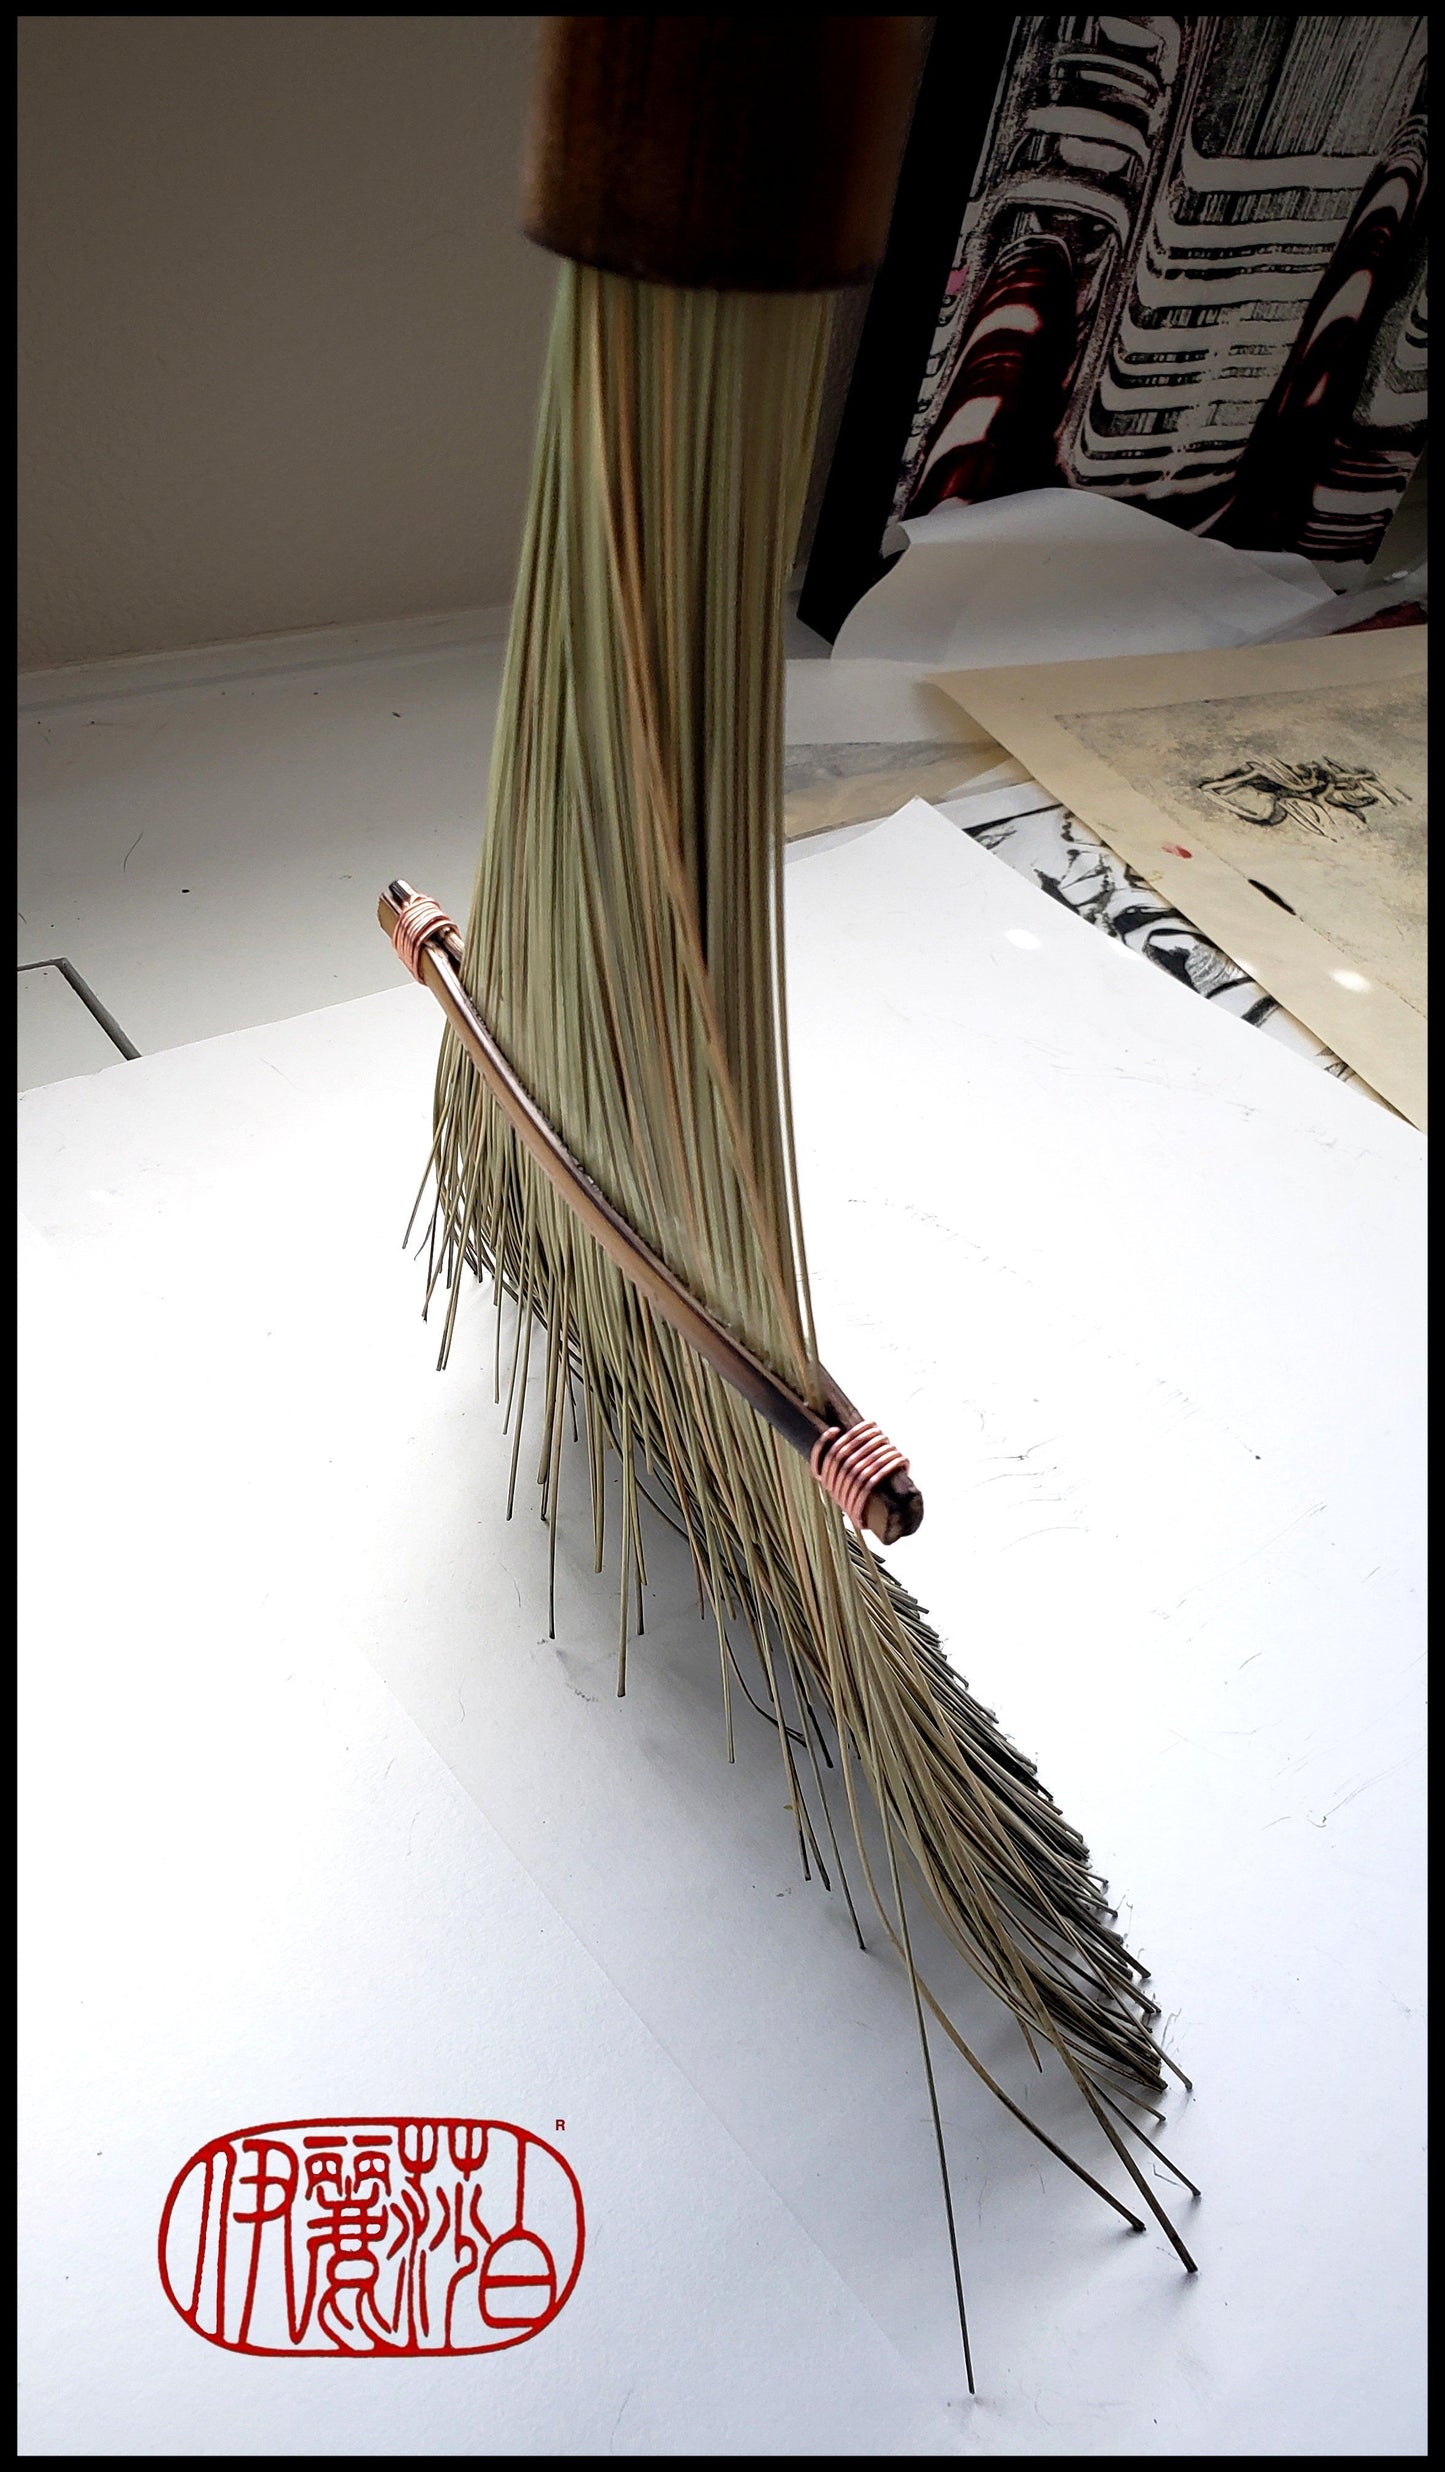 Large African Fiber Fan Paint Brush with Bamboo Handle Art Supplies Elizabeth Schowachert Art